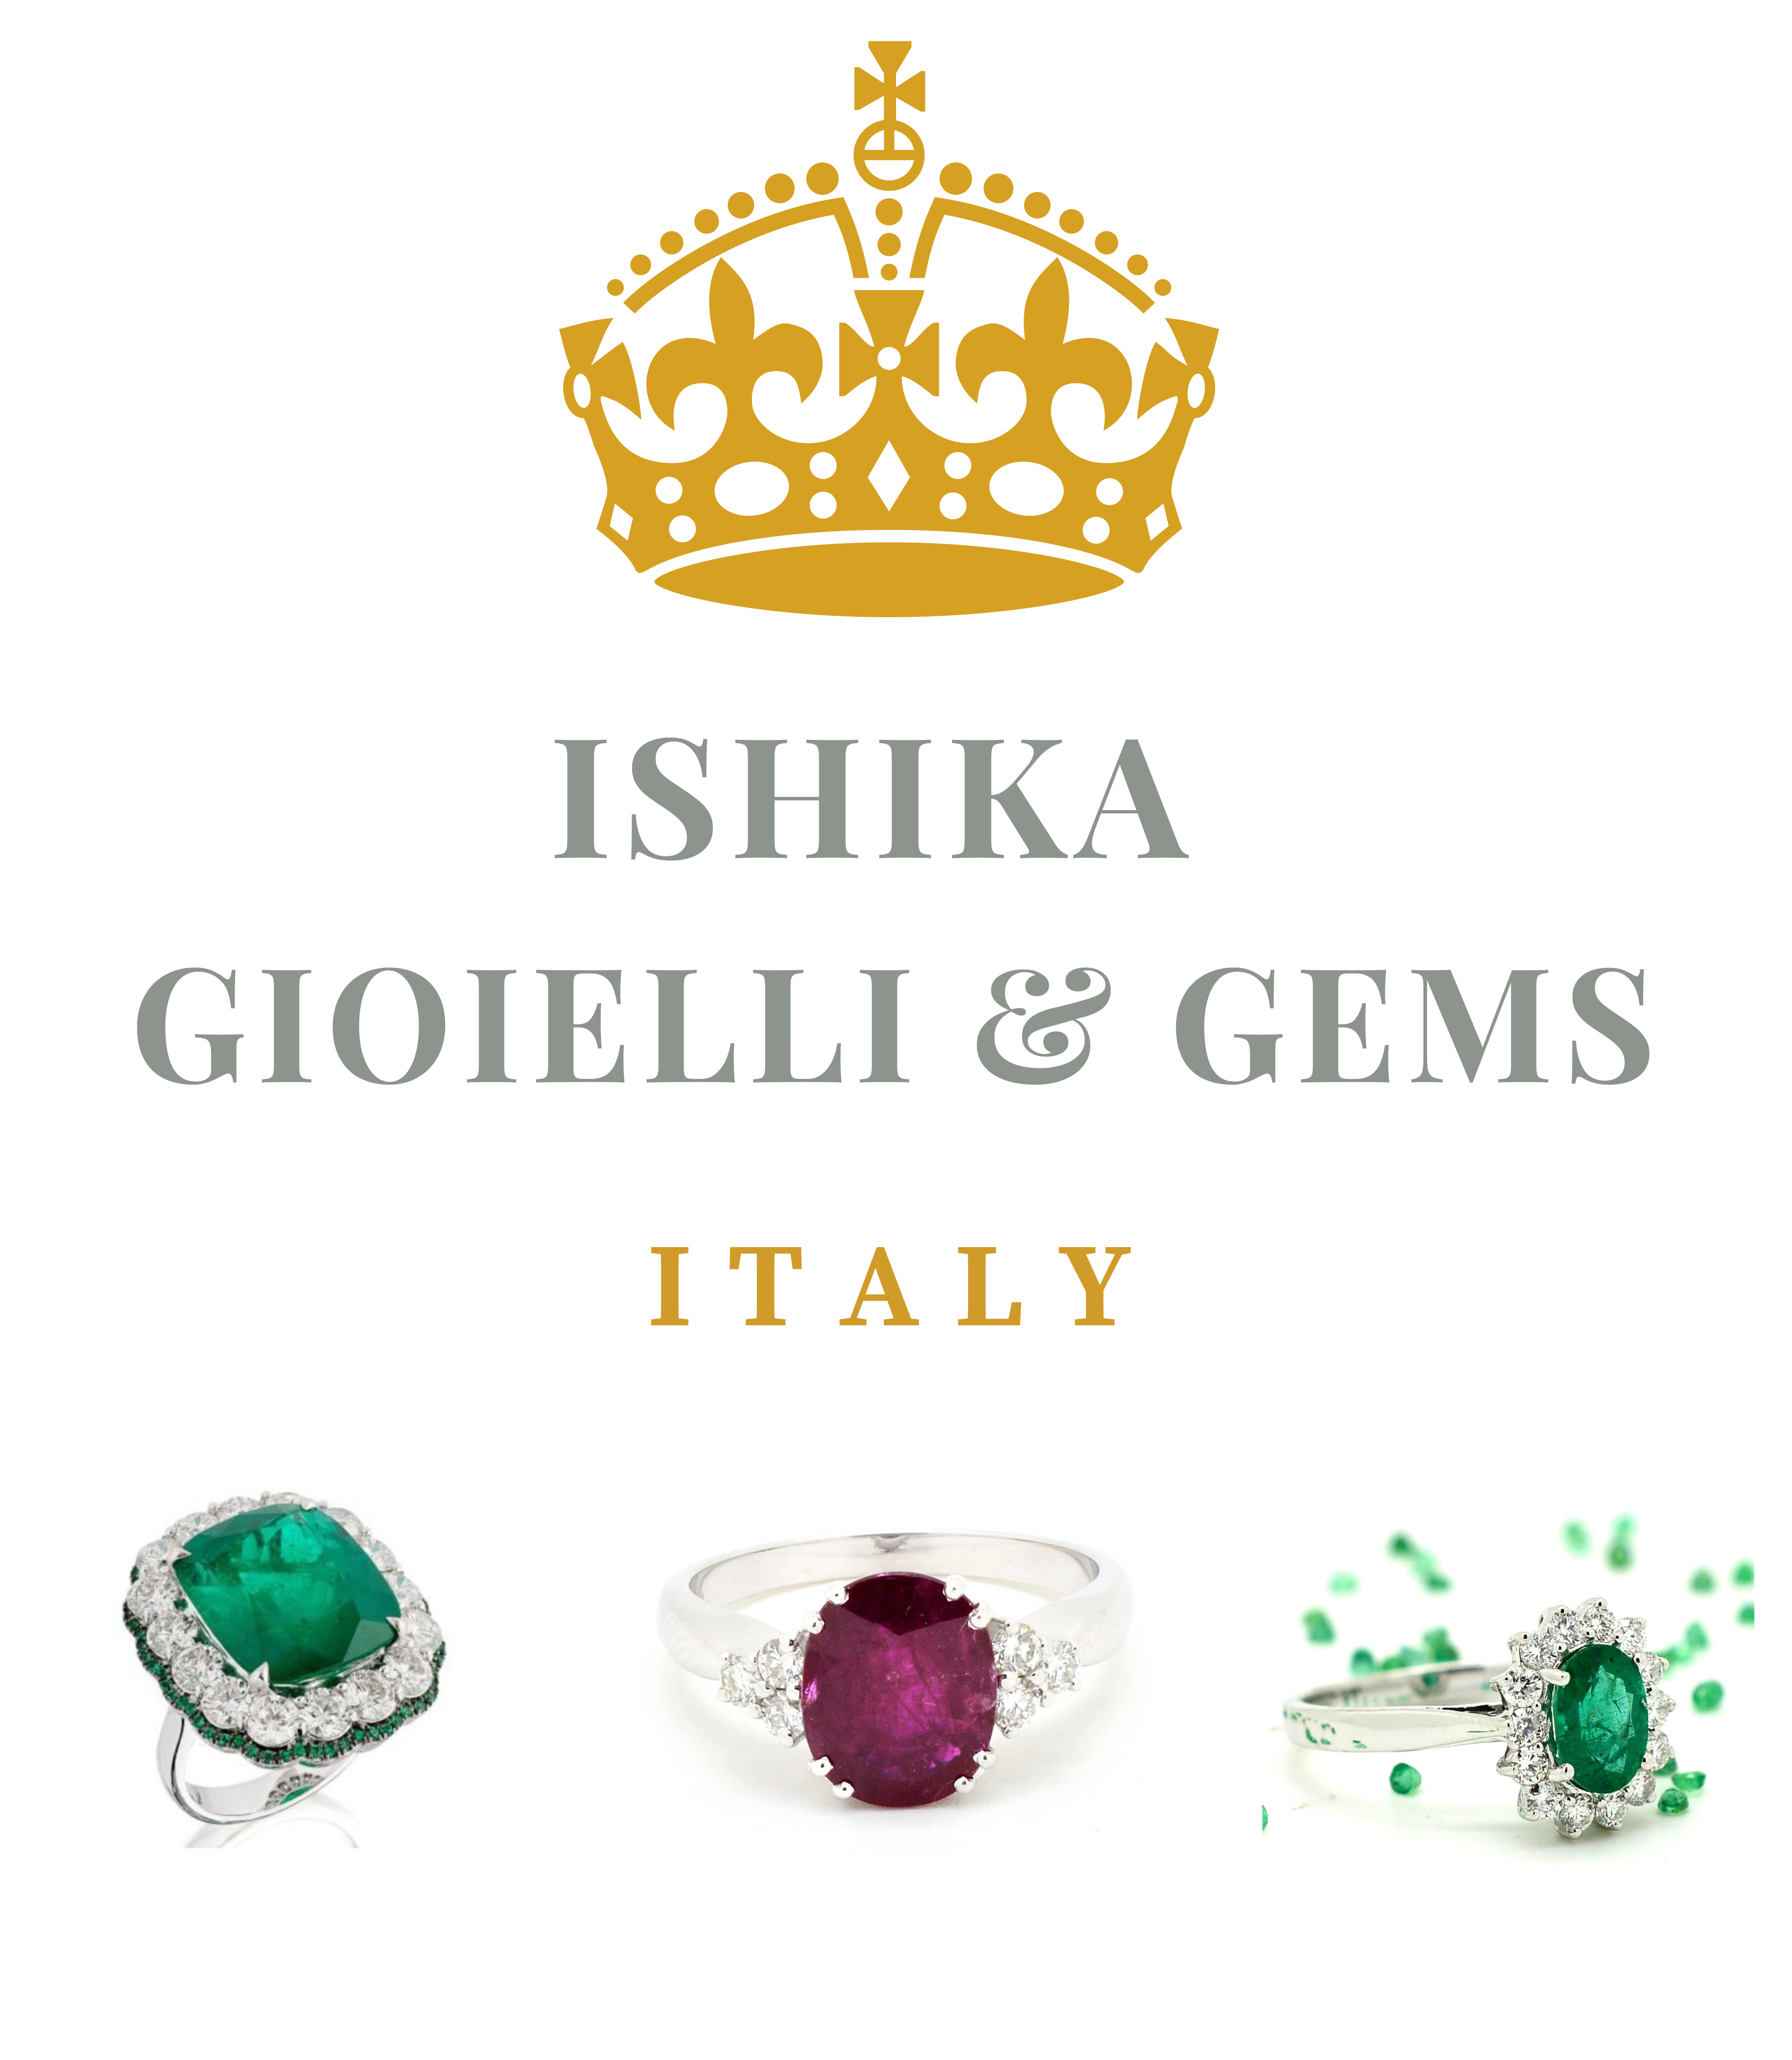 Ishika Gioielli & Gems